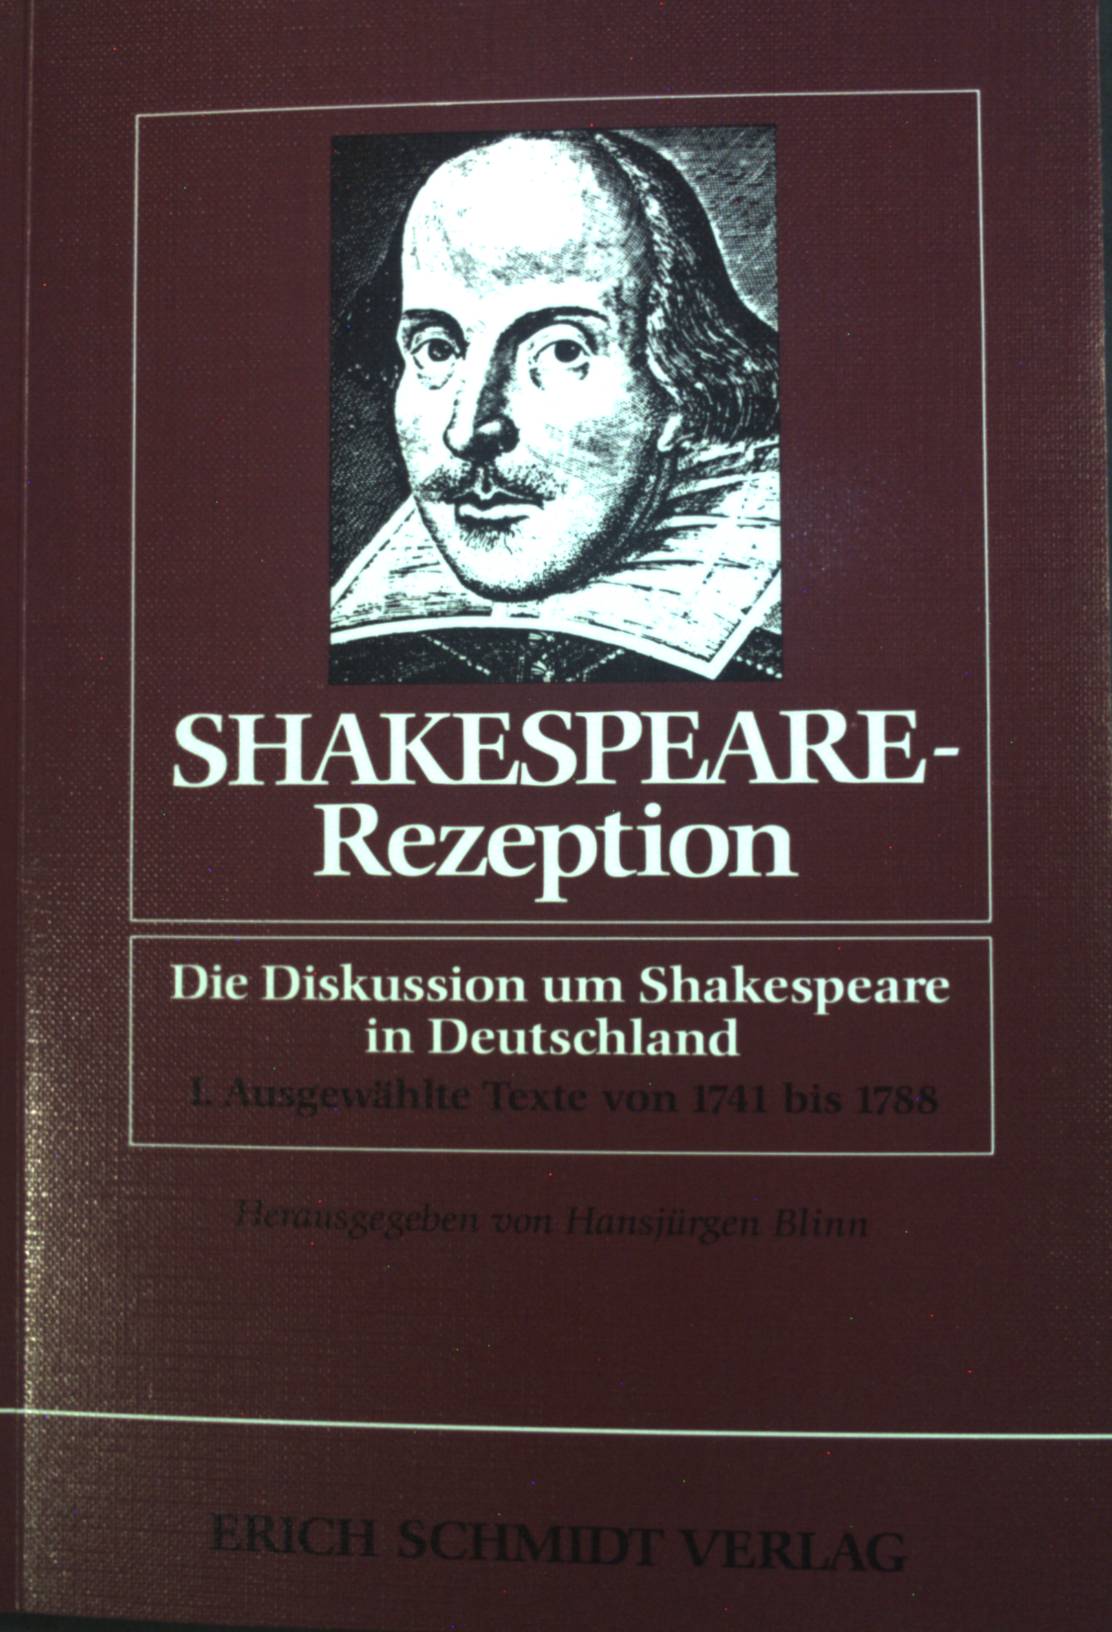 Shakespeare-Rezeption: Die Diskussion um Shakespeare in Deutschland, I. Ausgewählte Texte von 1741 bis 1788. - Blinn, Hansjürgen